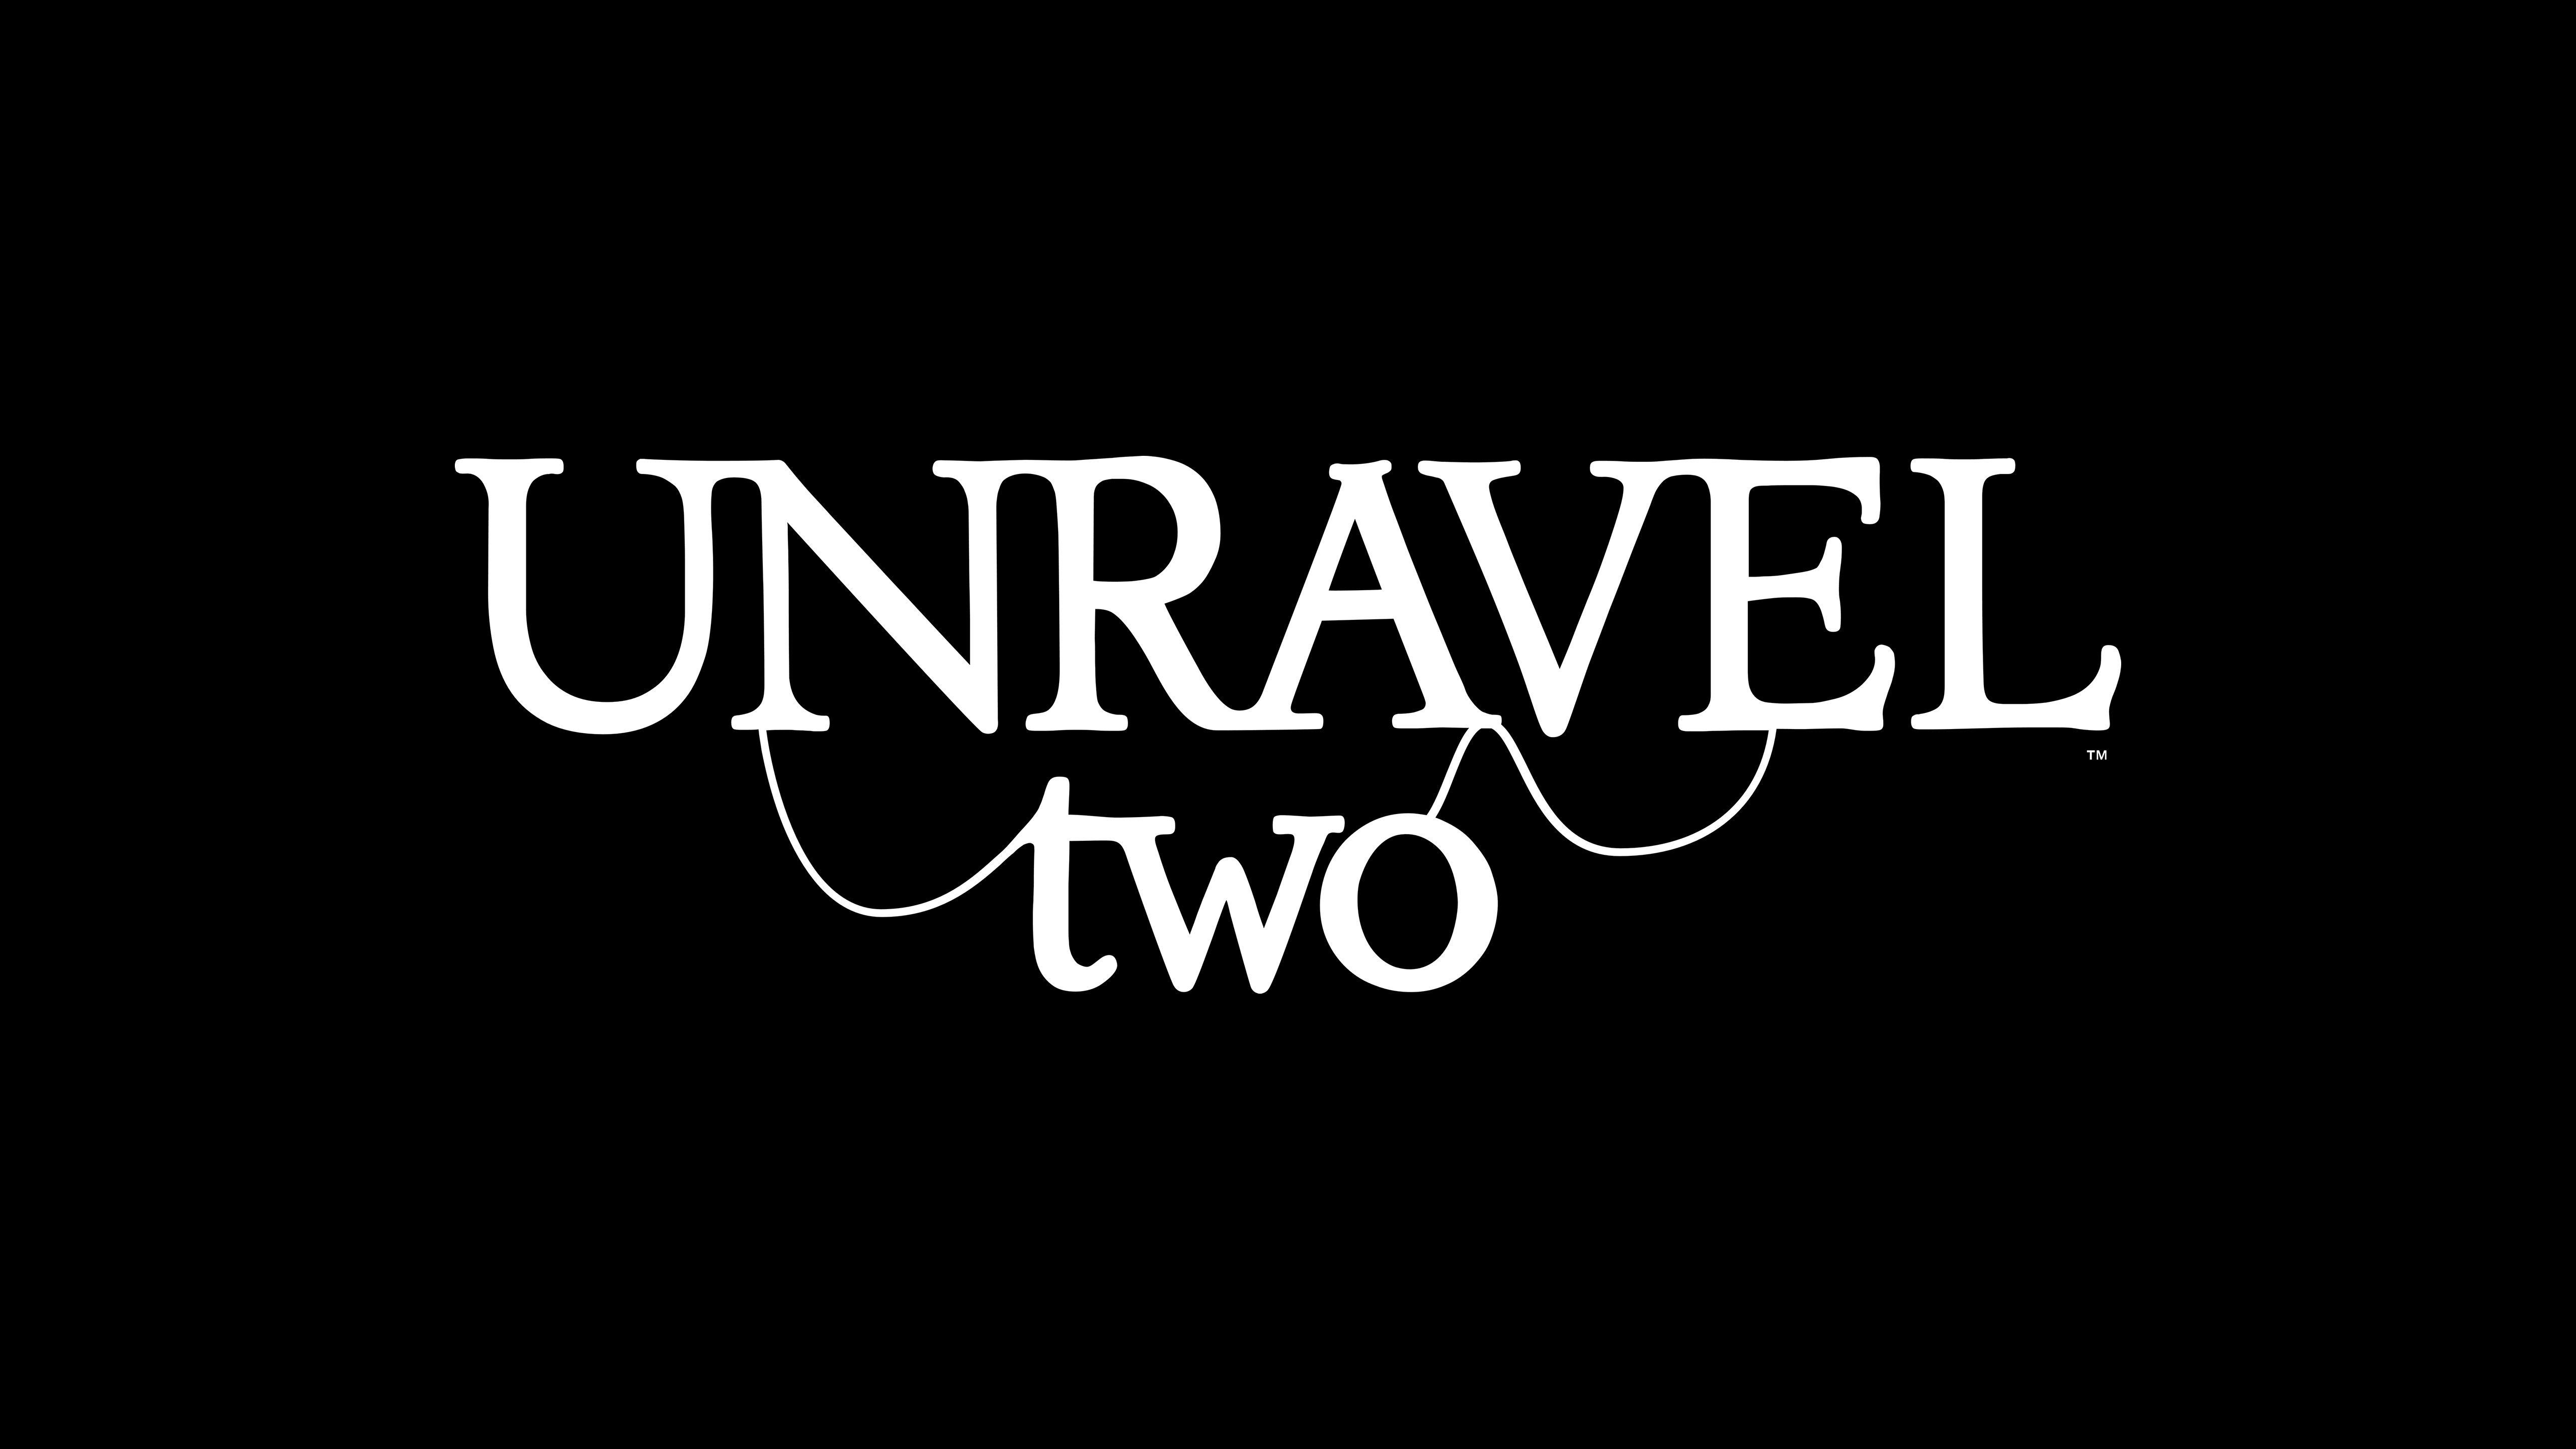 Unravel 2 Logo 5k, HD Games, 4k Wallpaper, Image, Background